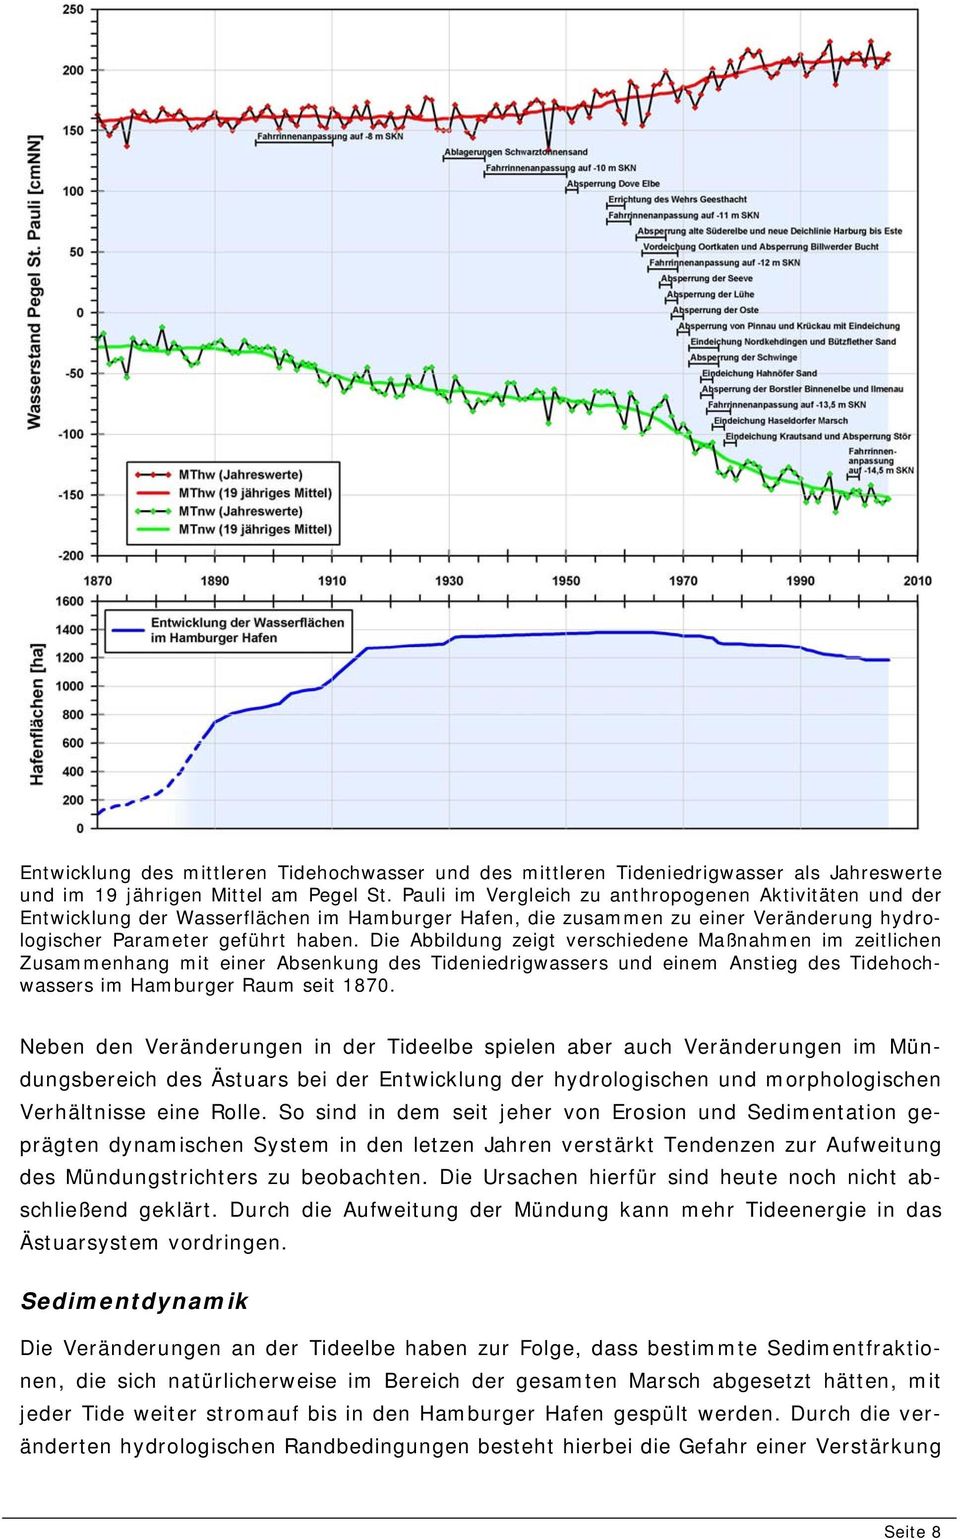 Die Abbildung zeigt verschiedene Maßnahmen im zeitlichen Zusammenhang mit einer Absenkung des Tideniedrigwassers und einem Anstieg des Tidehochwassers im Hamburger Raum seit 1870.